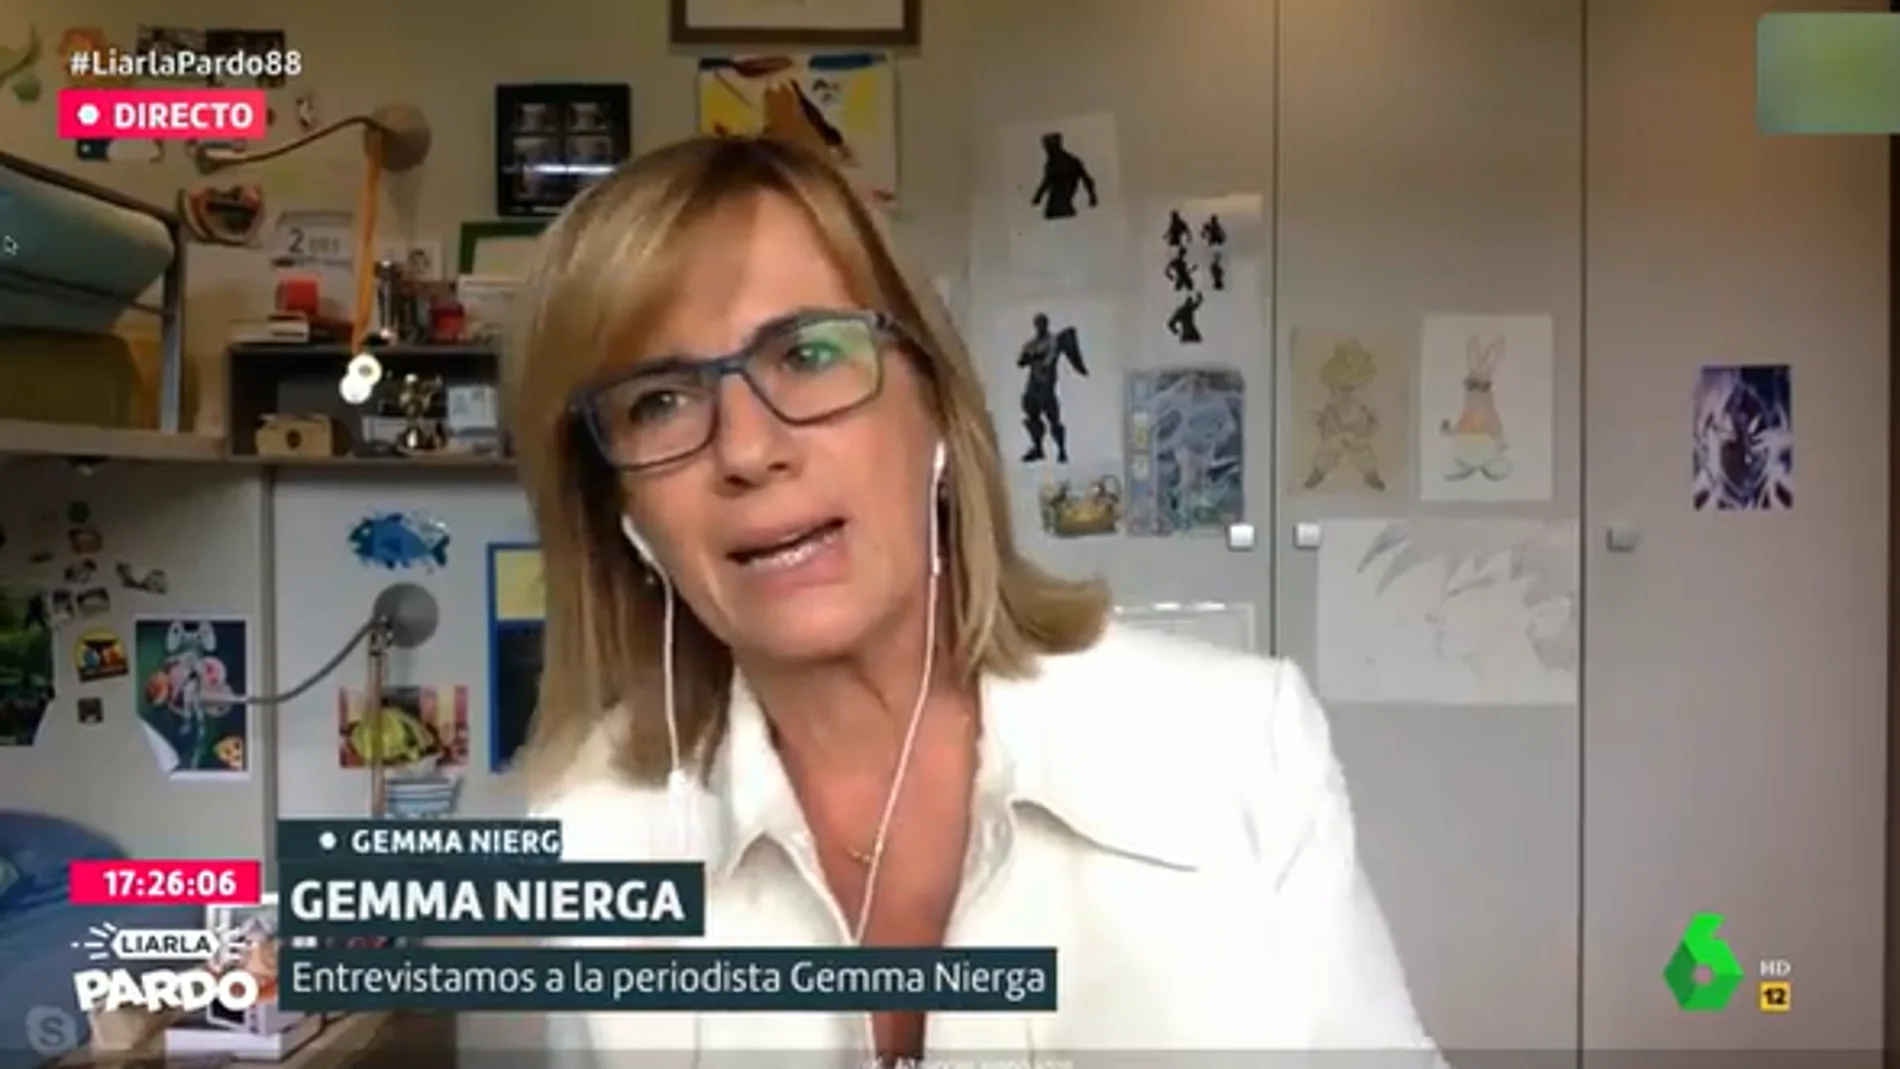 La periodista Gemma Nierga, en Liarla Pardo